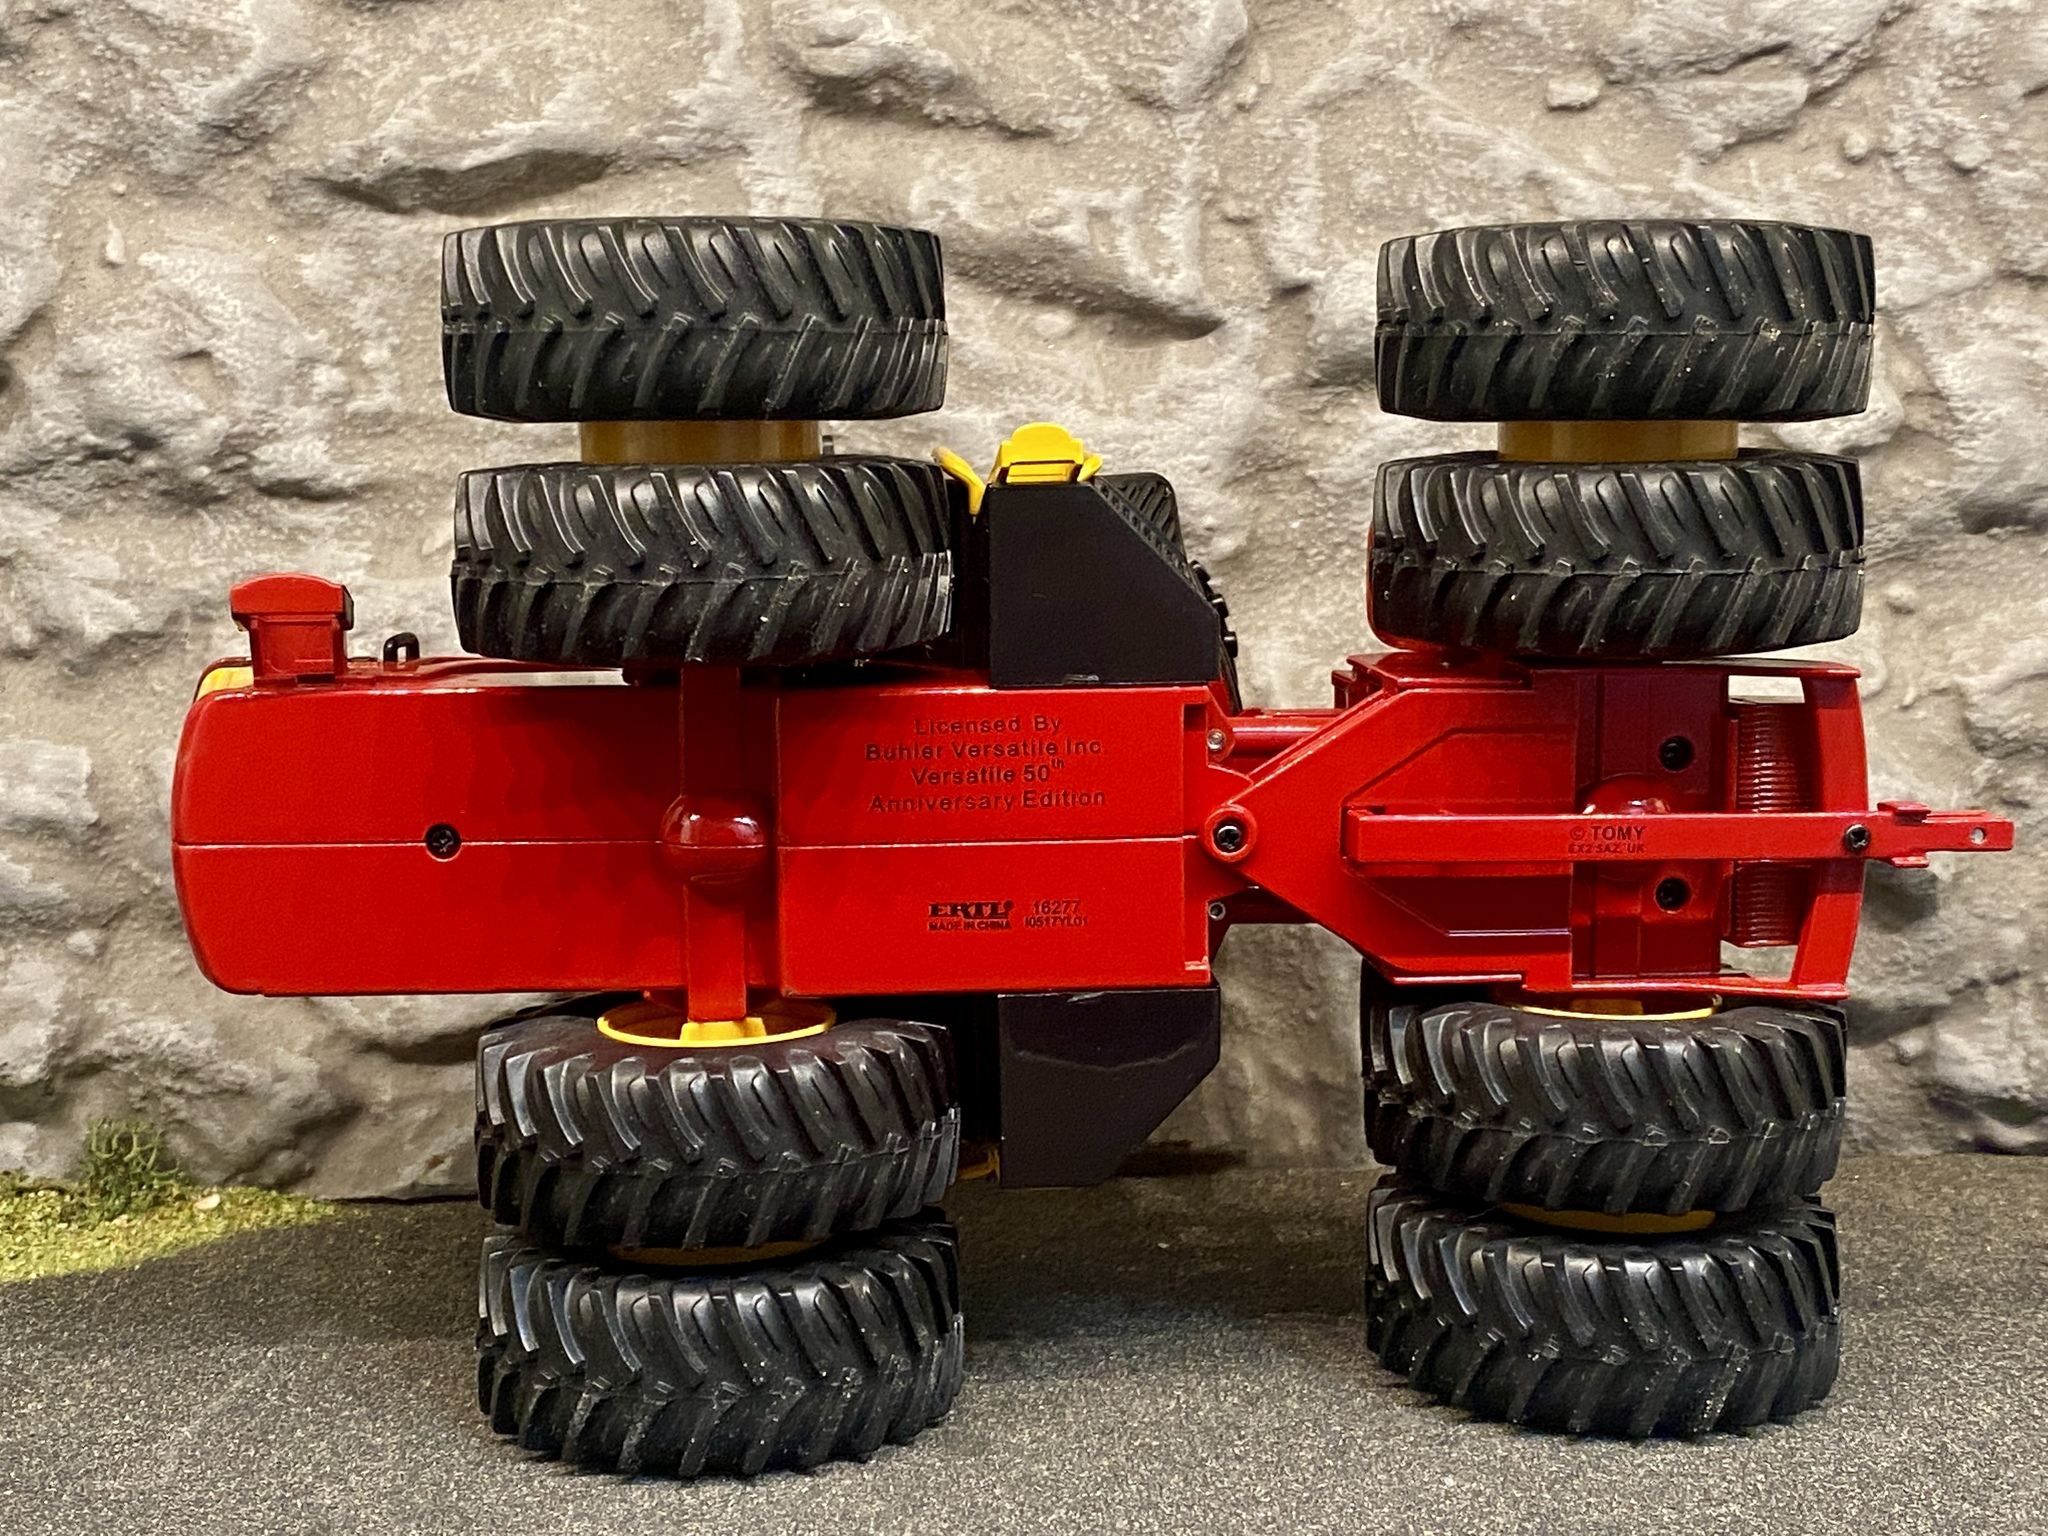 Skala 1/32: Unik Kanadensisk Traktor: VERSATILE 4WD Tractor 610 från ERTL